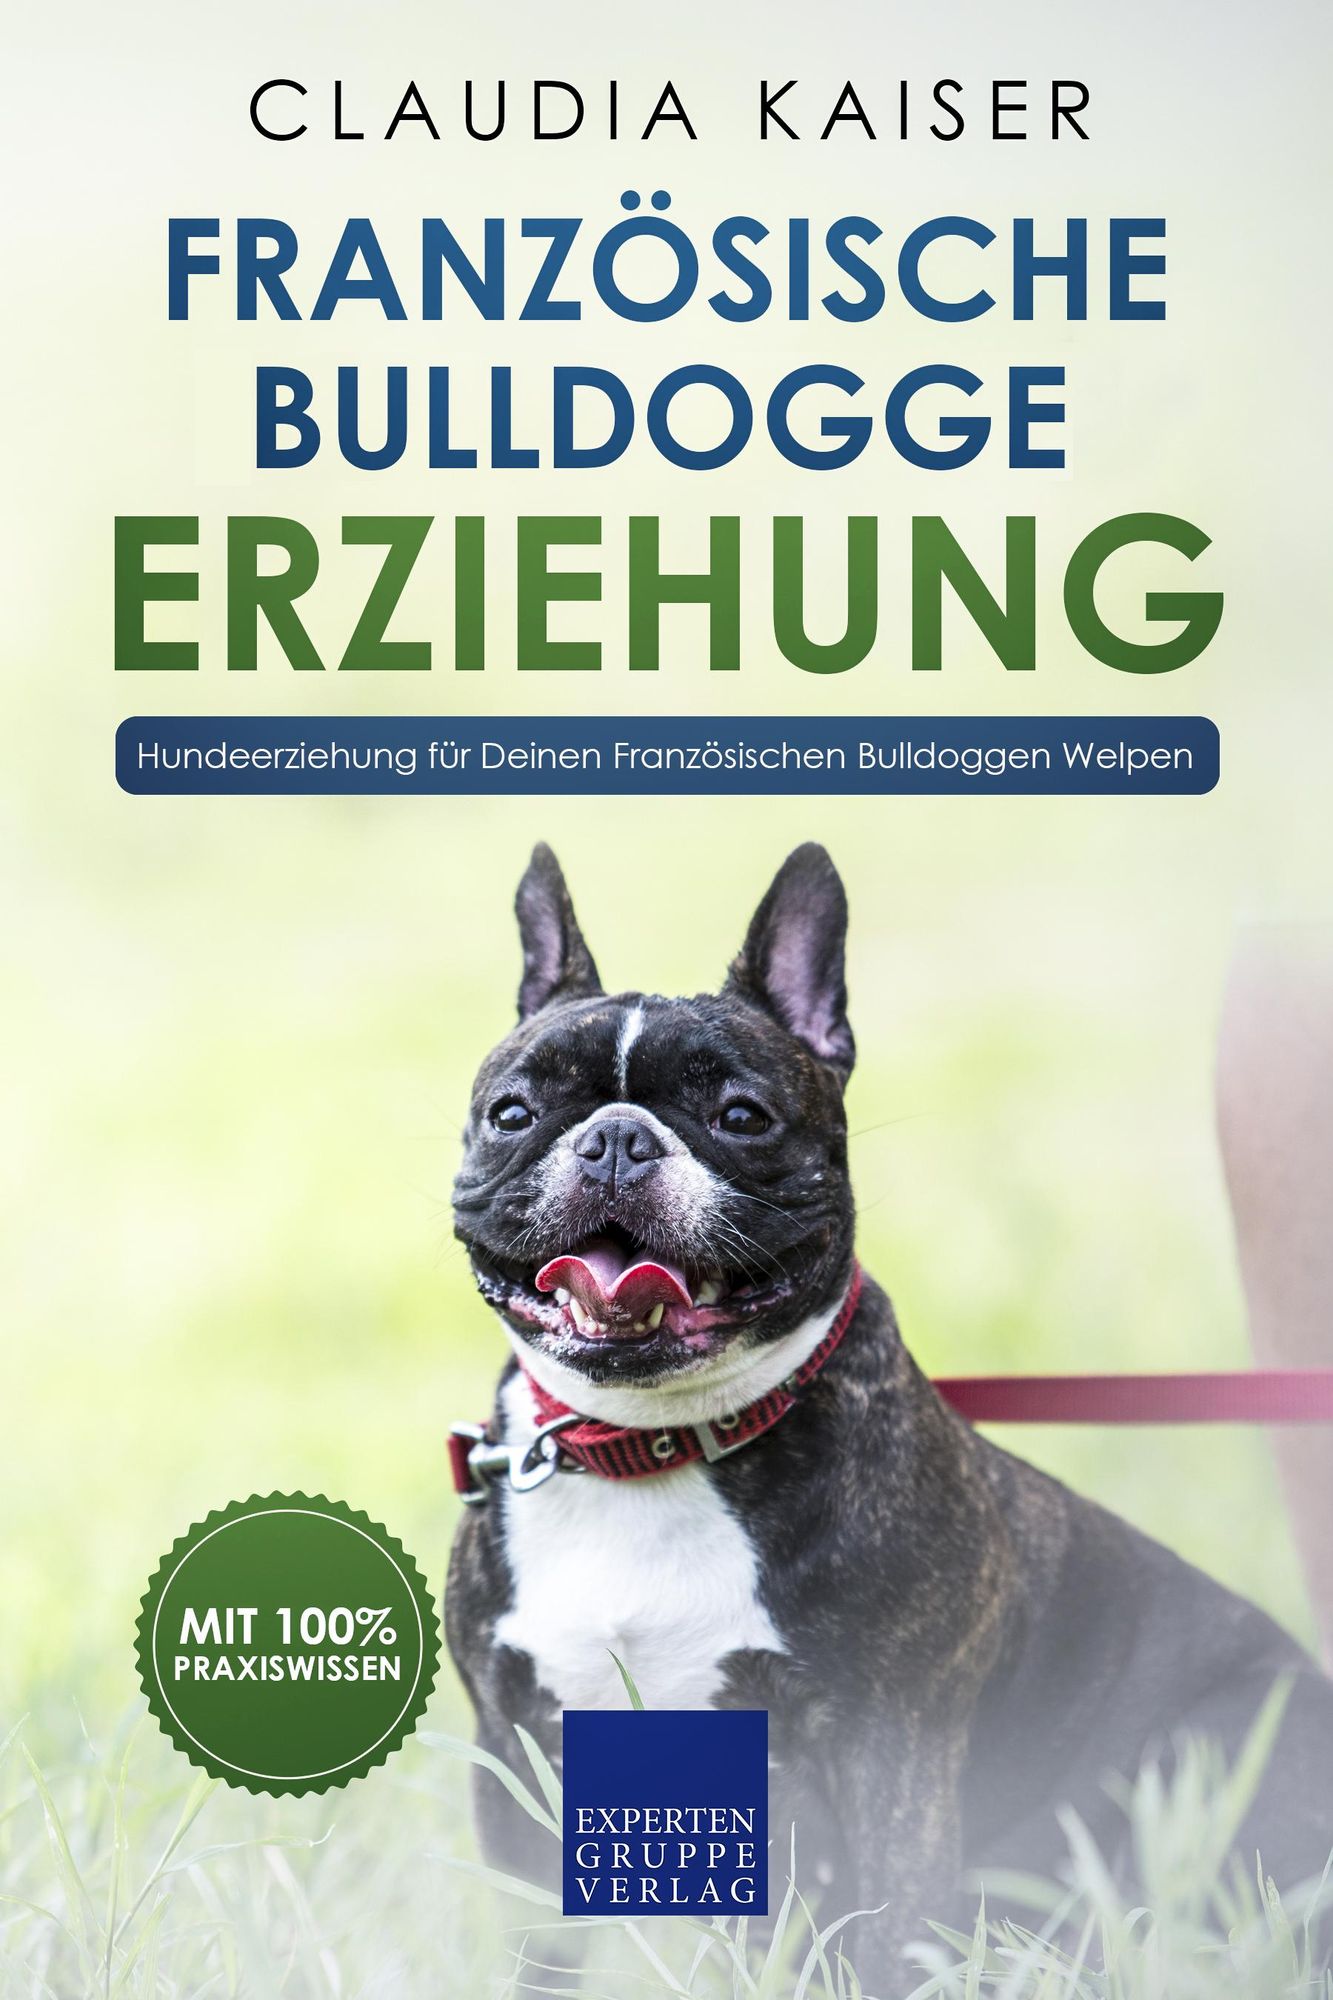 Welpe der französischen bulldogge -Fotos und -Bildmaterial in